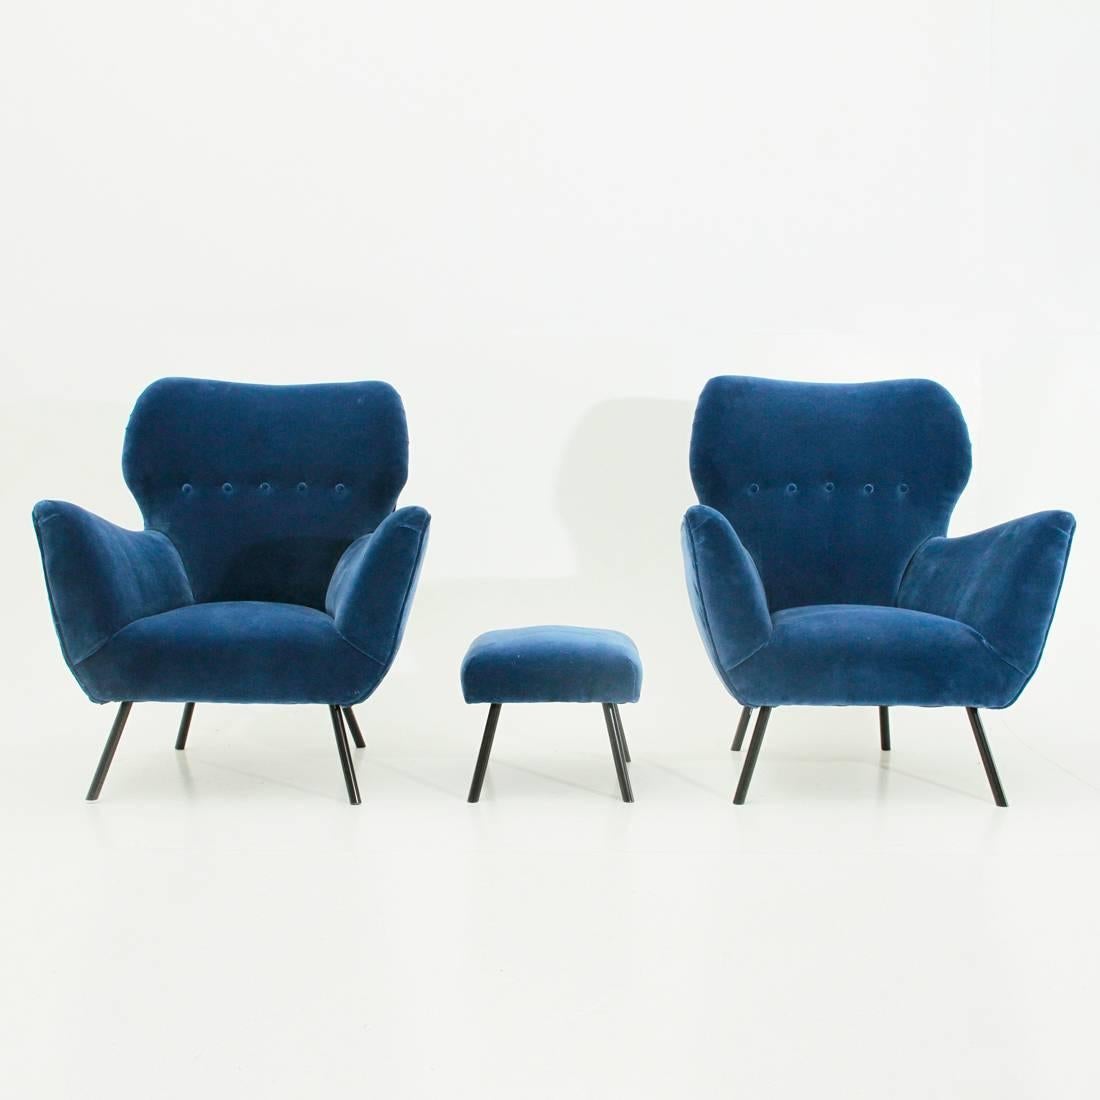 Mid-Century Modern Italian Midcentury Blue Velvet Armchairs with Ottoman, 1950s